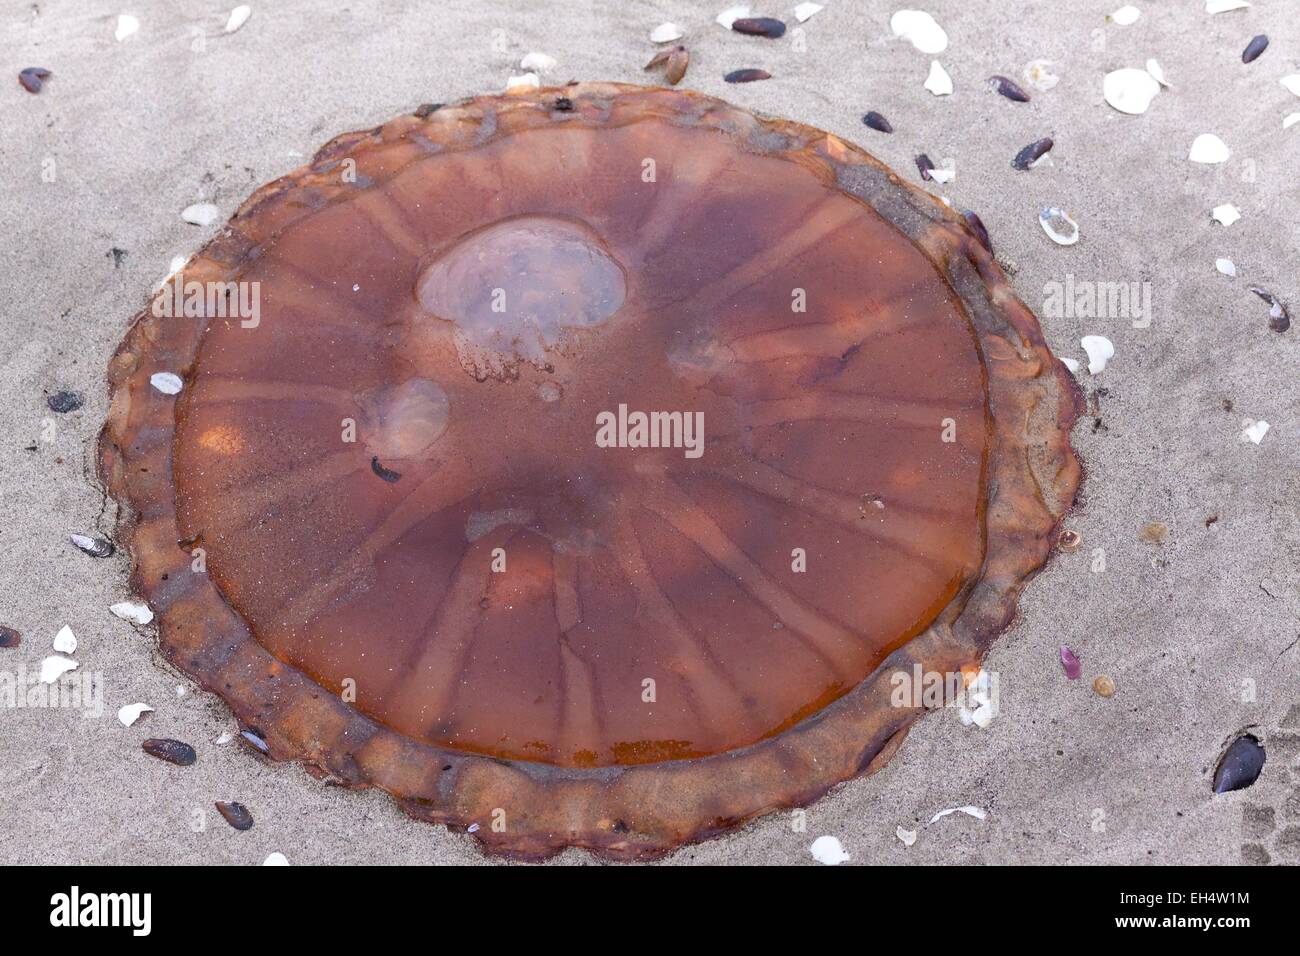 Namibia, Erongo region, Walvis bay, compass jellyfish (Chrysaora hysoscella) Stock Photo